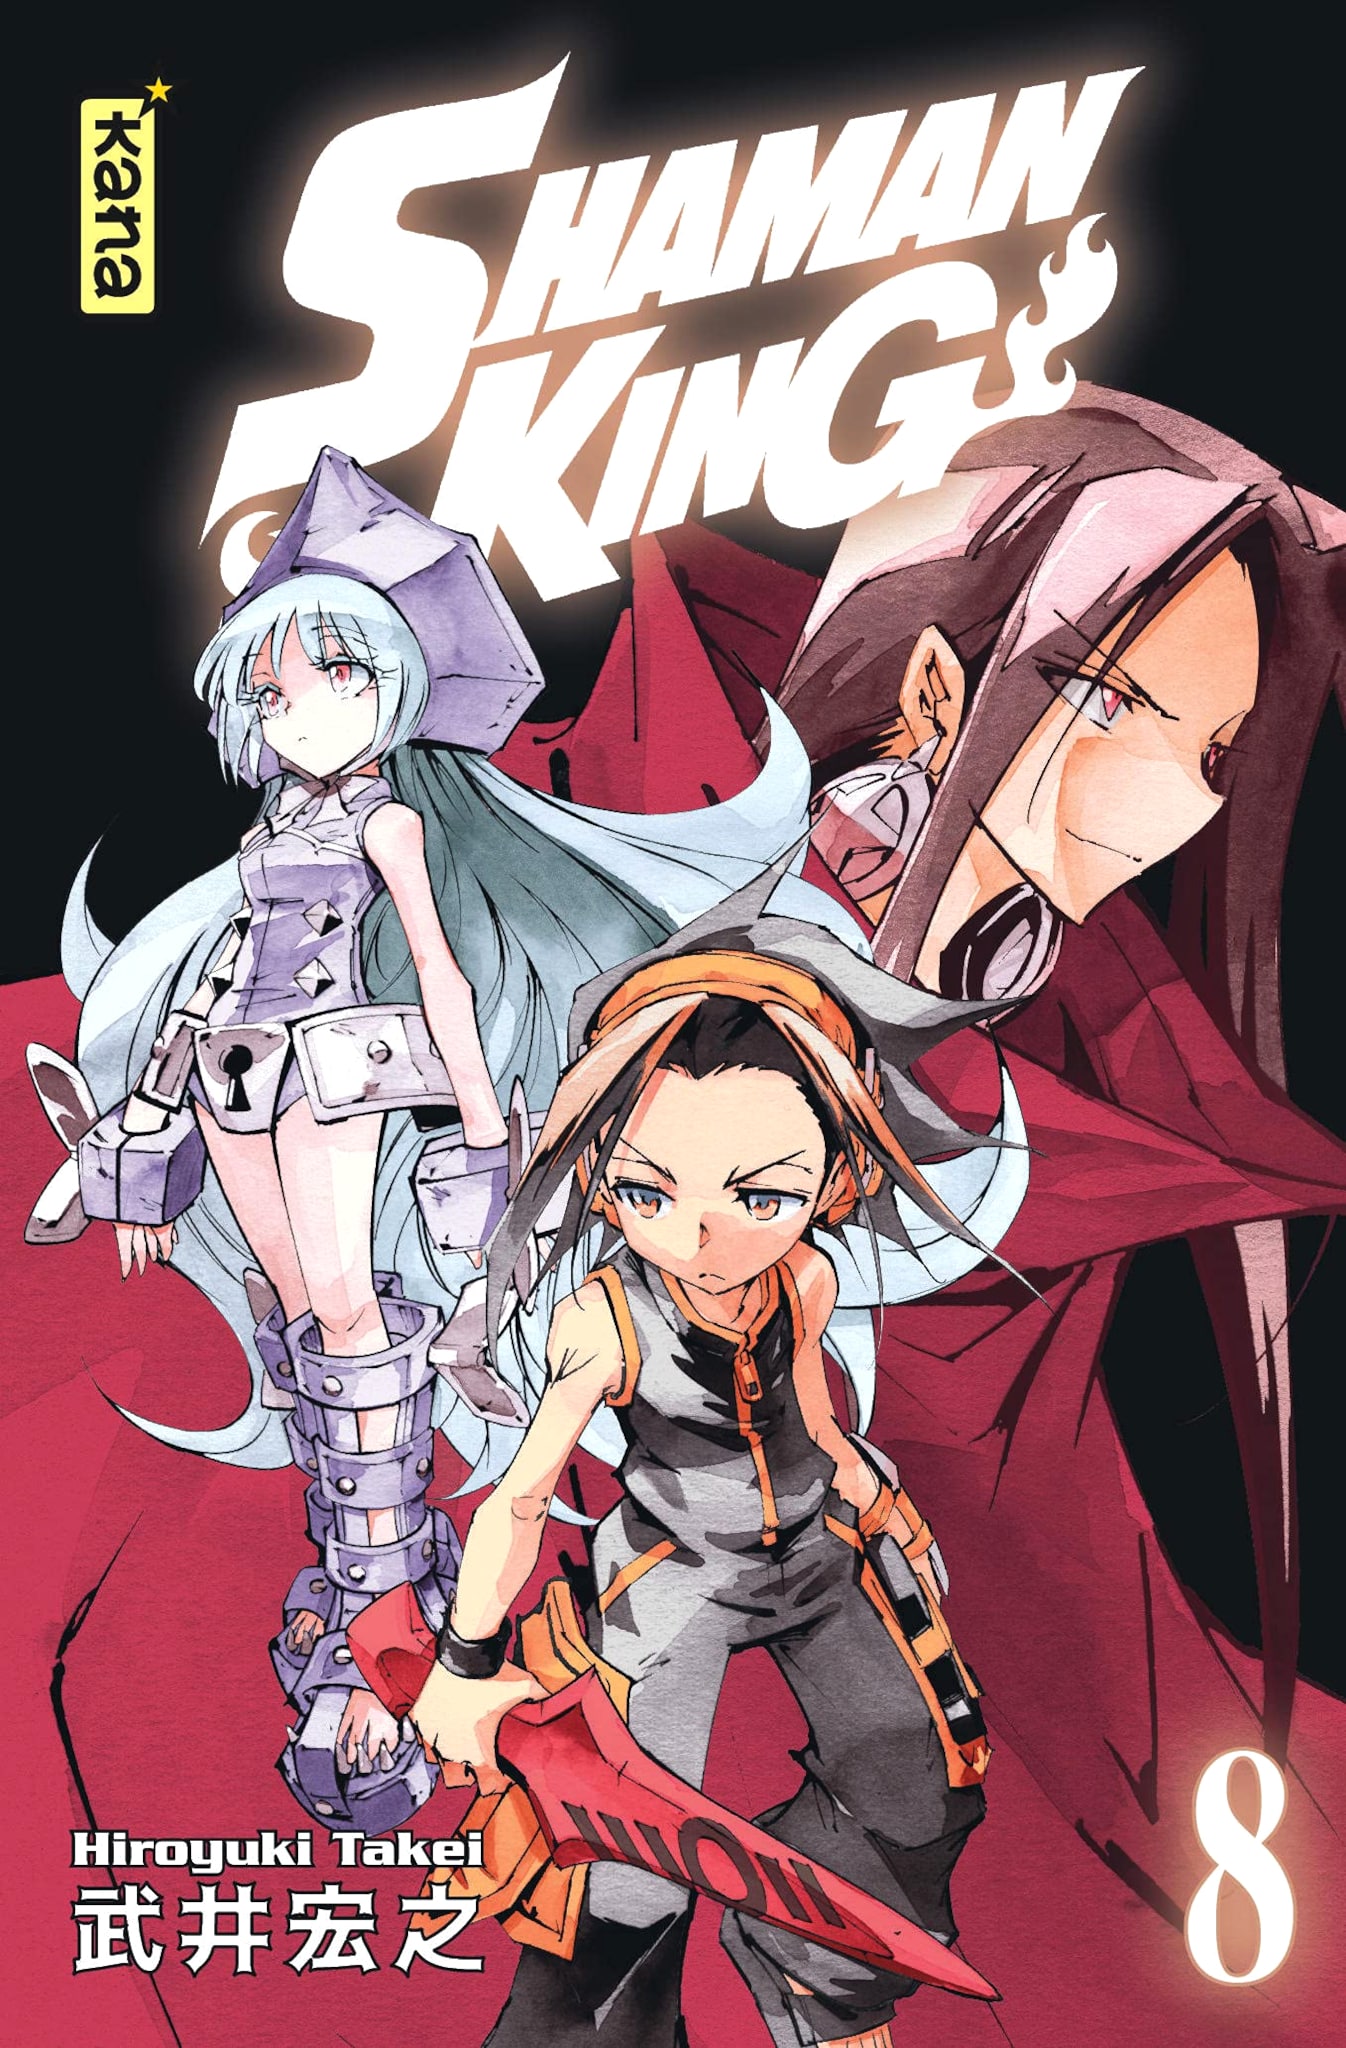 Tome 8 du manga Shaman King Star Edition